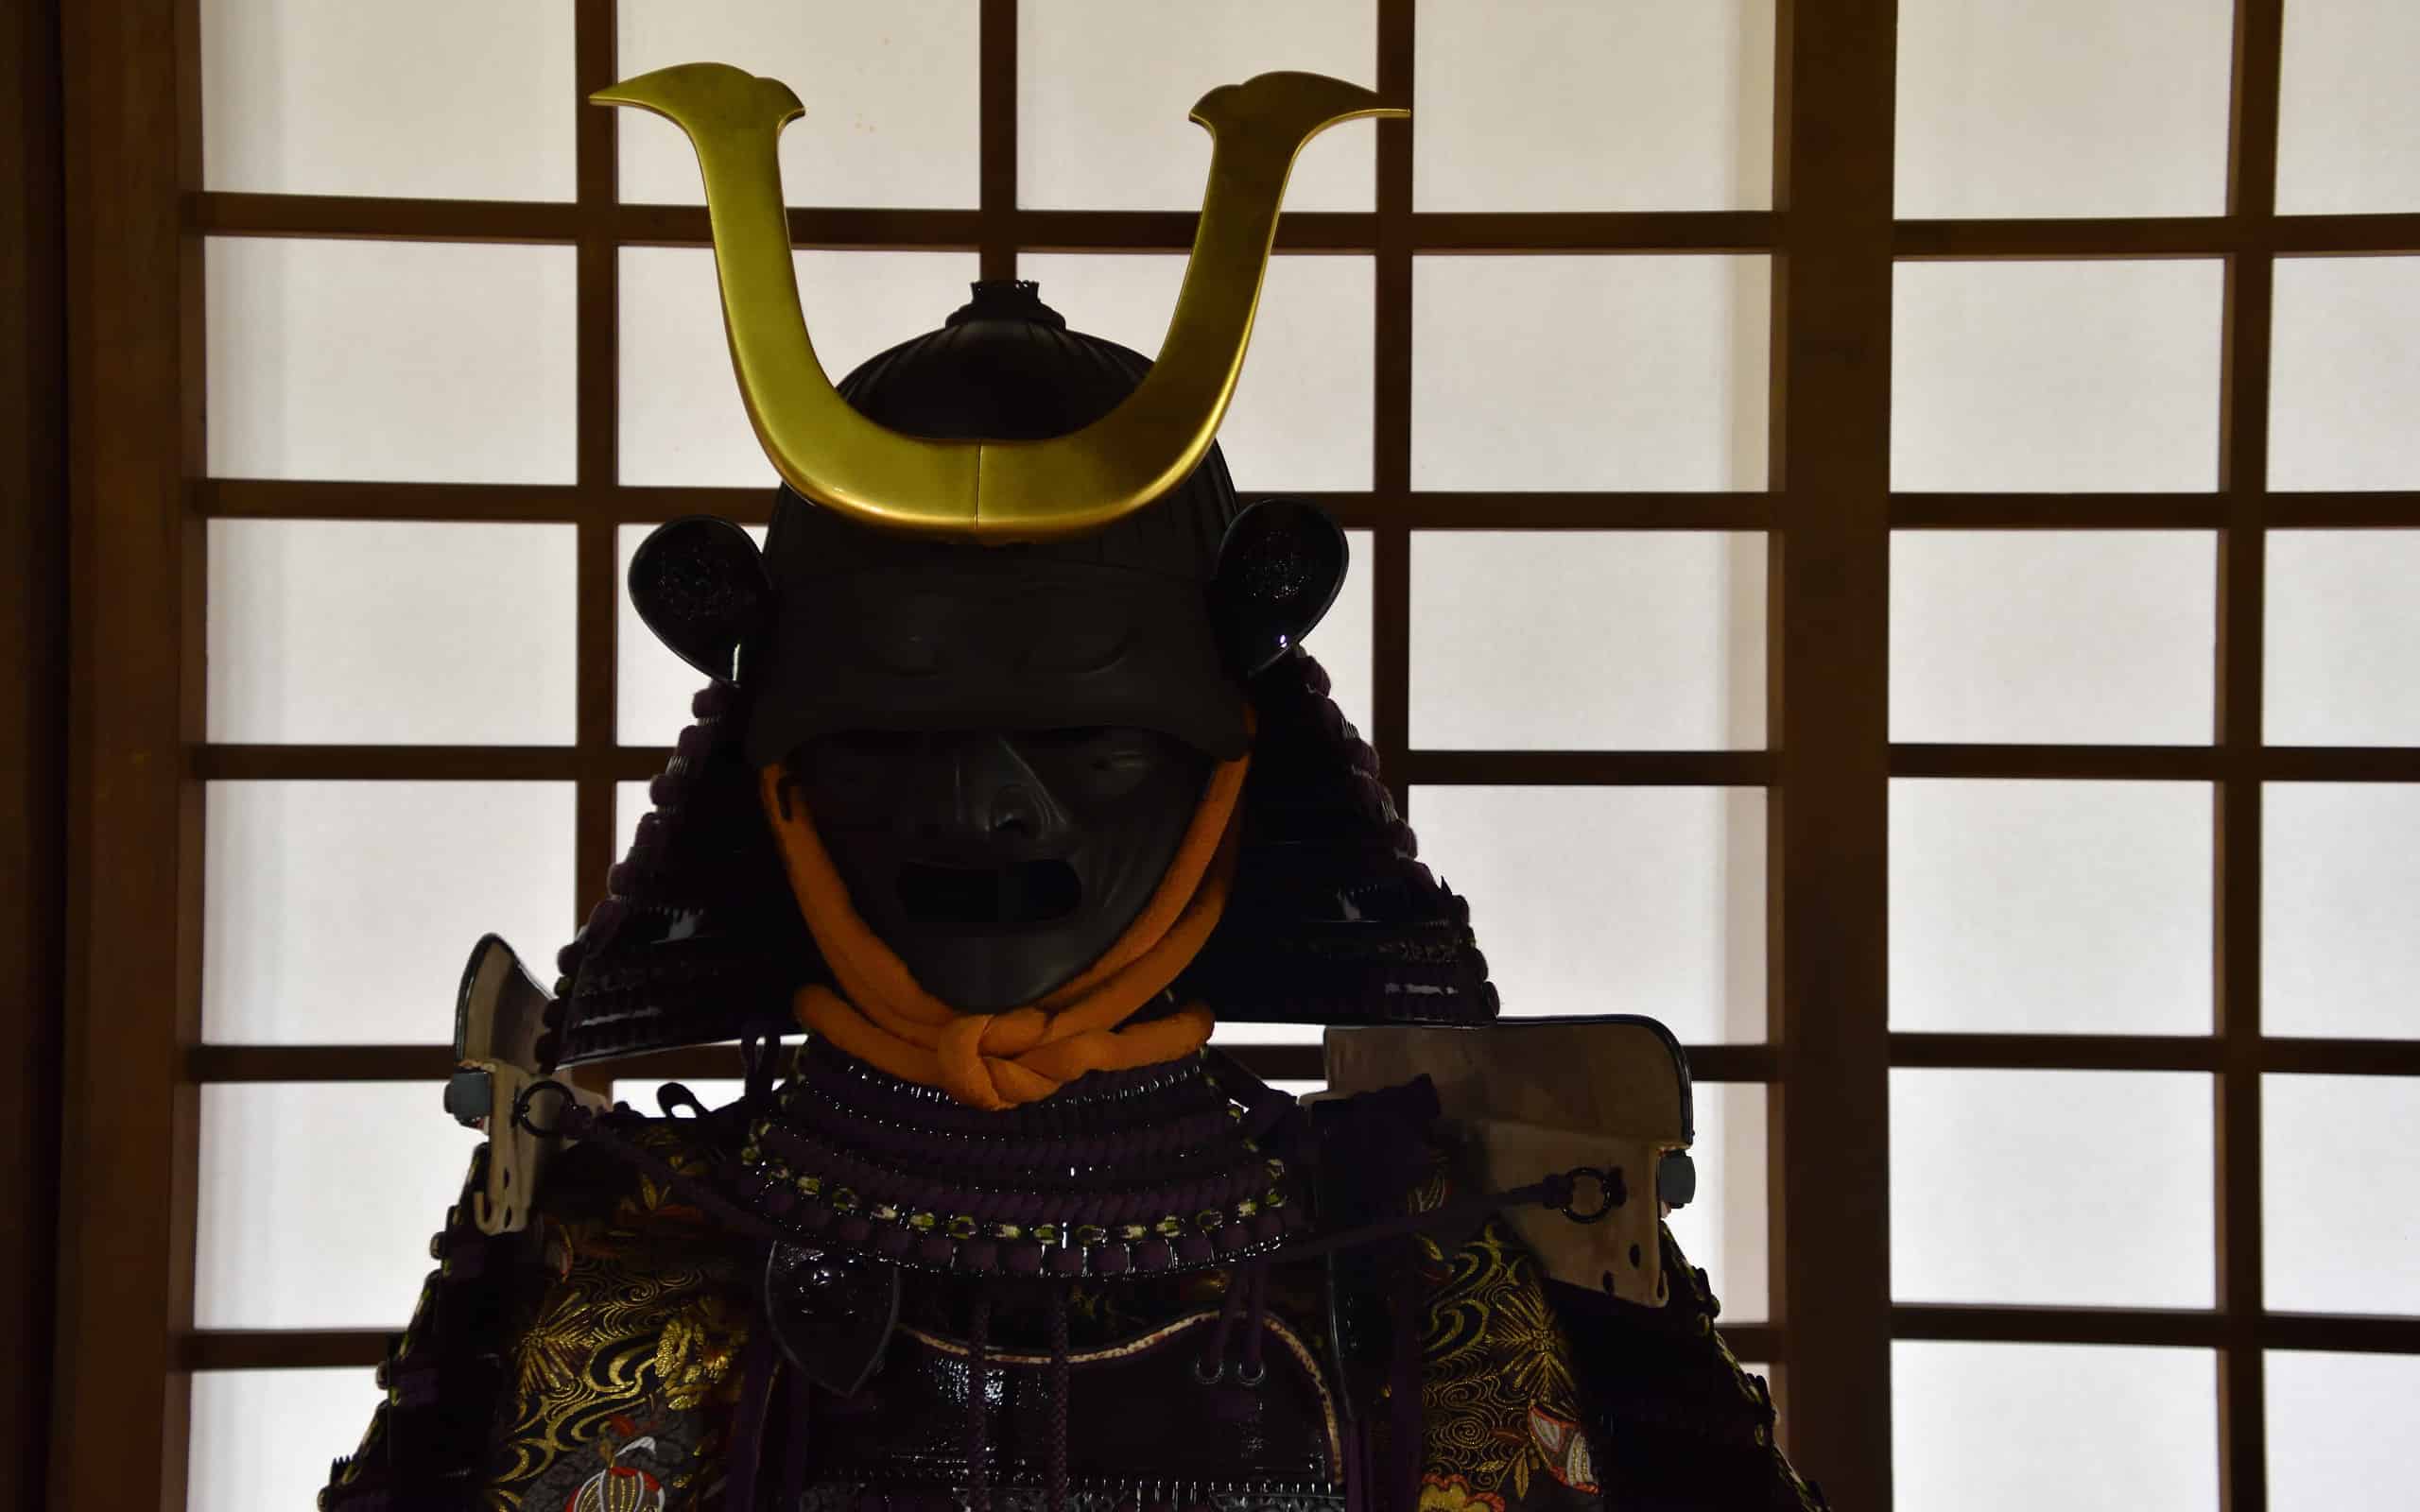 Japanese medieval samurai armor